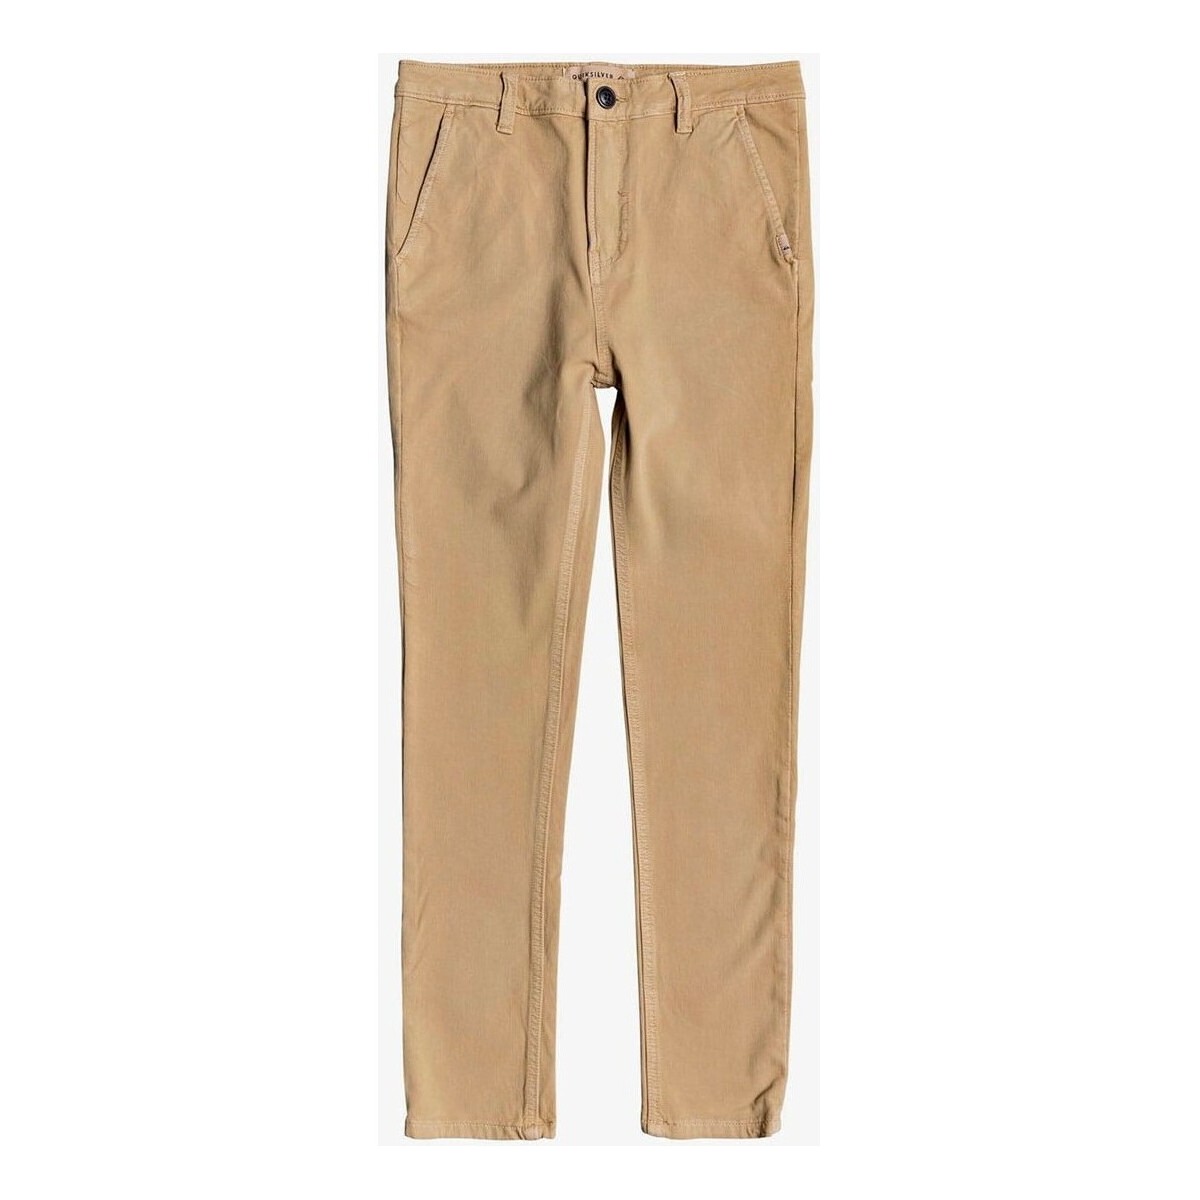 Quiksilver Autres Junior - Pantalon - beige 4F71Llxl